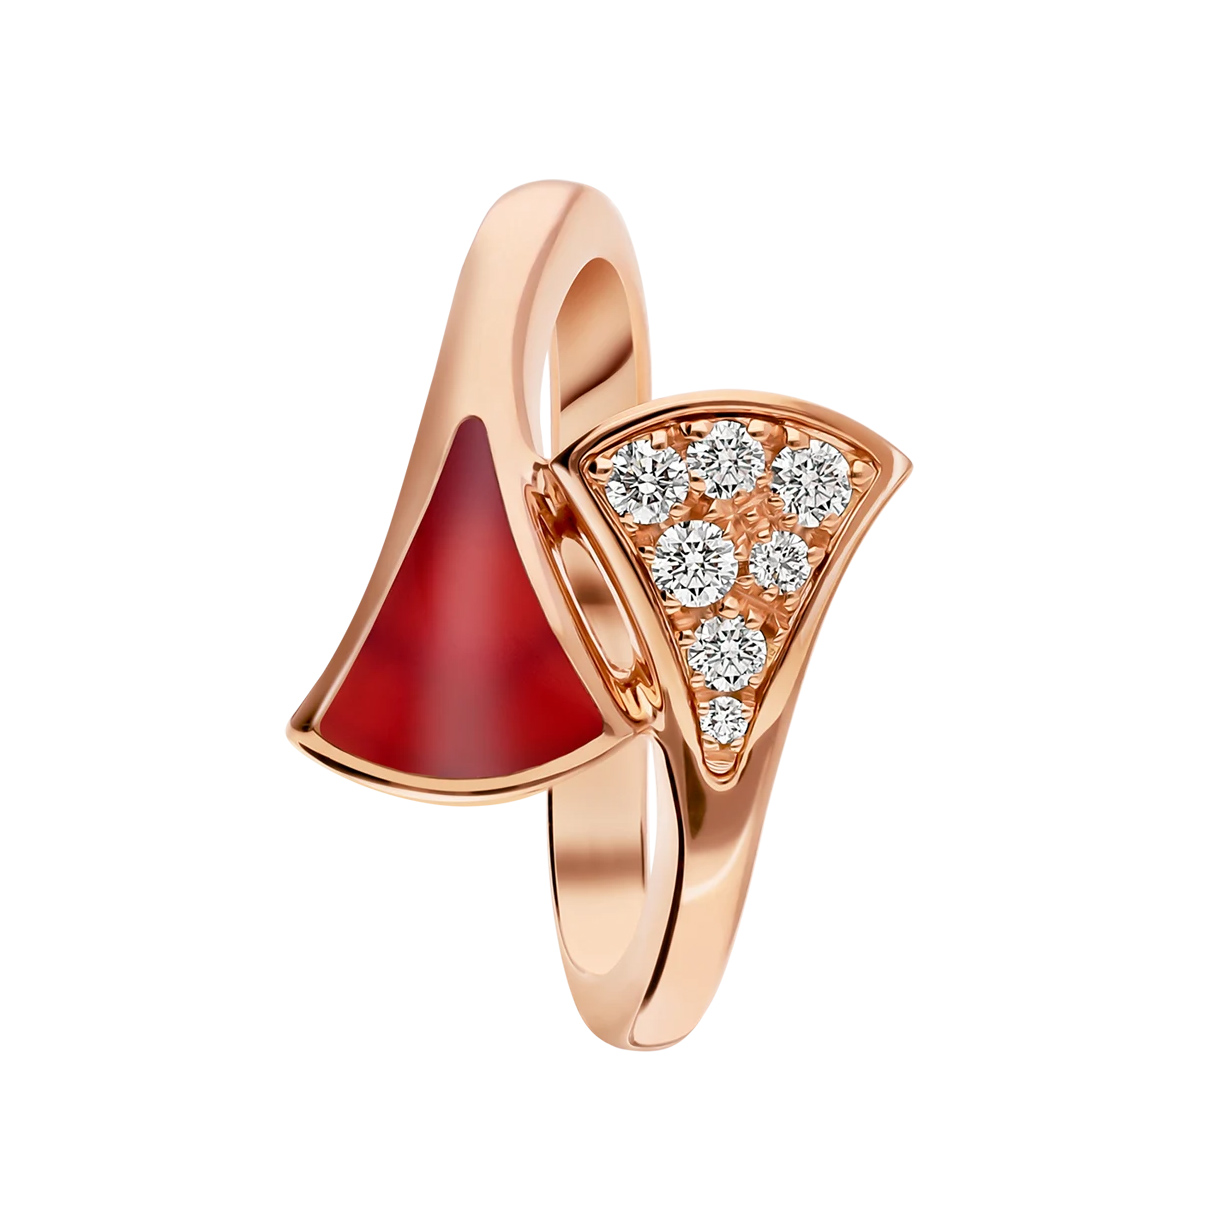 Atacado de joias OEM / ODM 18k conjunto de anel de ouro rosa com elemento cornalina e diamantes pavé 20 anos em joias OEM